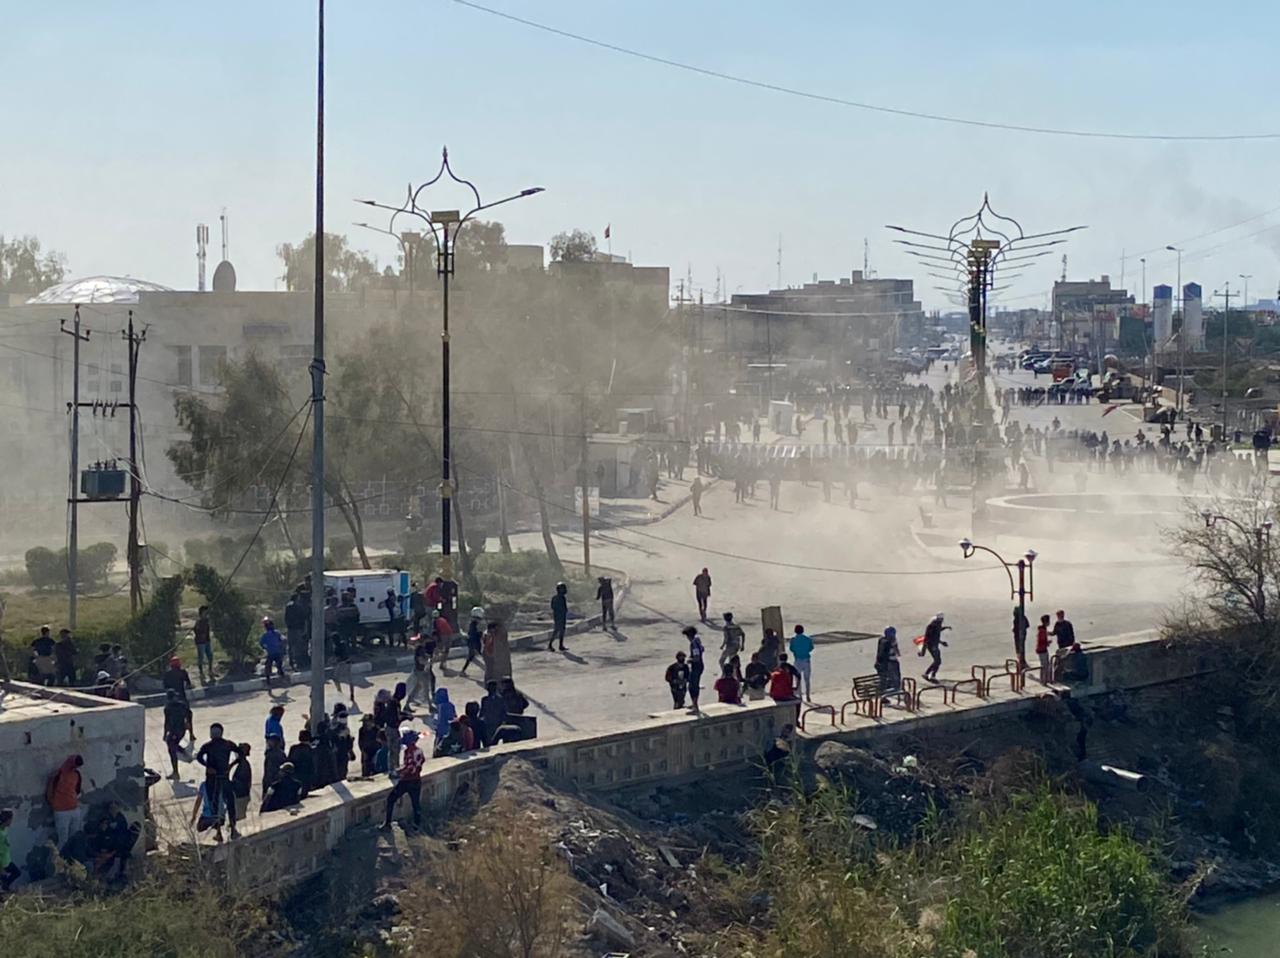 مركز الناصرية ساحةً للكر والفر بين القوات الأمنية والمحتجين: يتراشقون بالحجارة